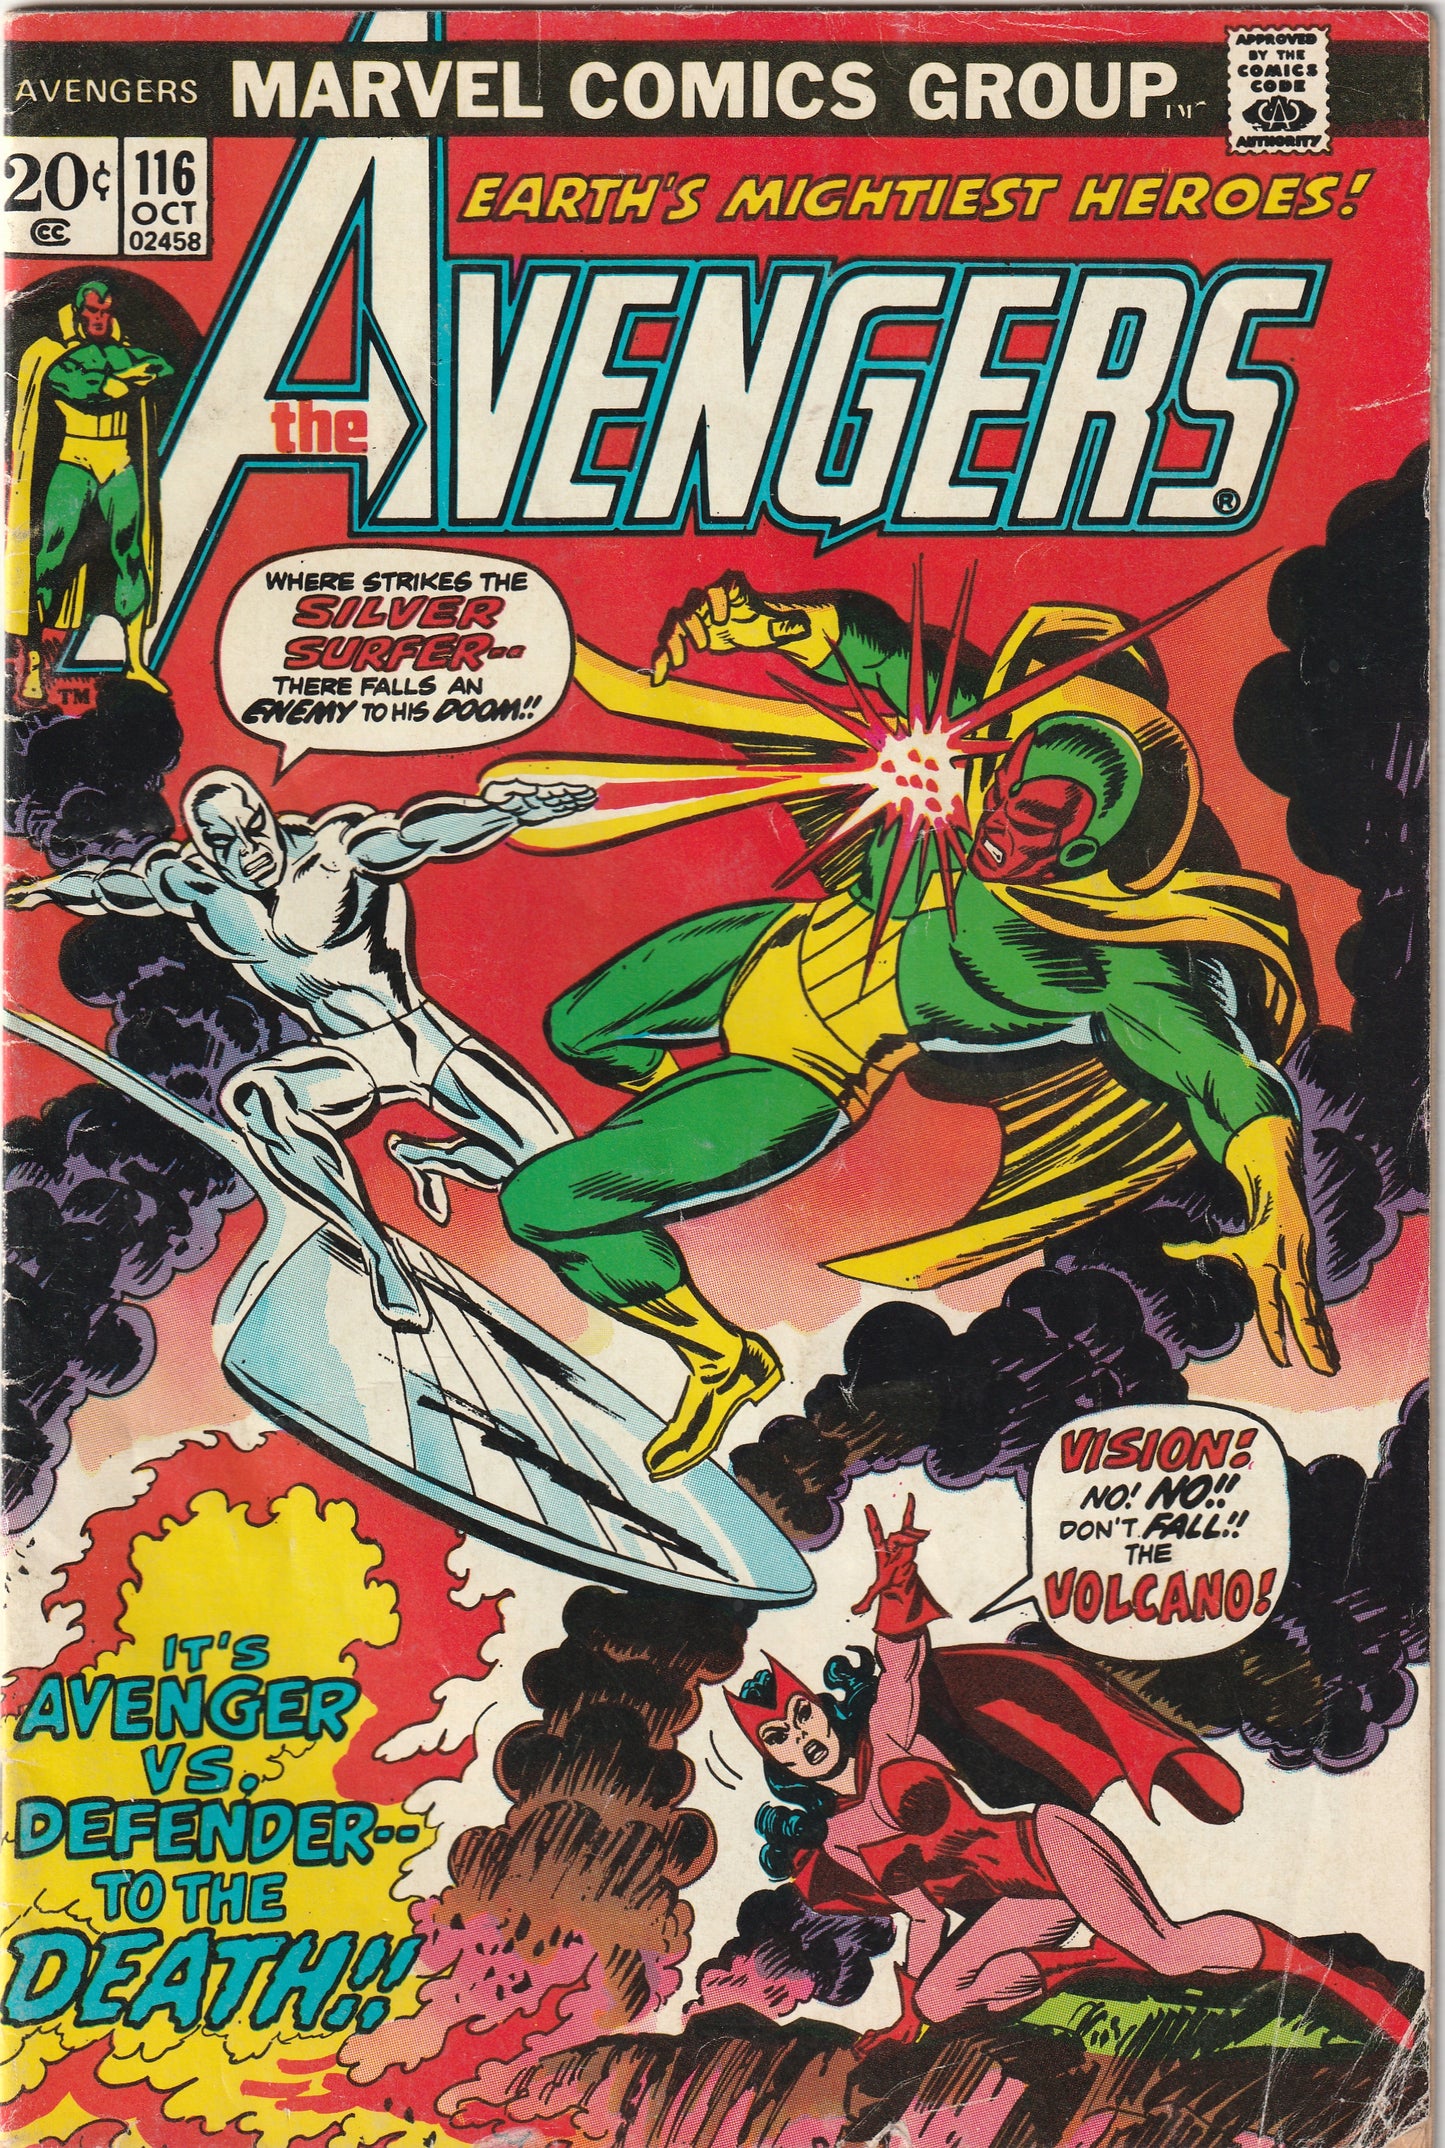 Avengers #116 (1973) - Avengers/Defenders War - Silver Surfer vs Vision